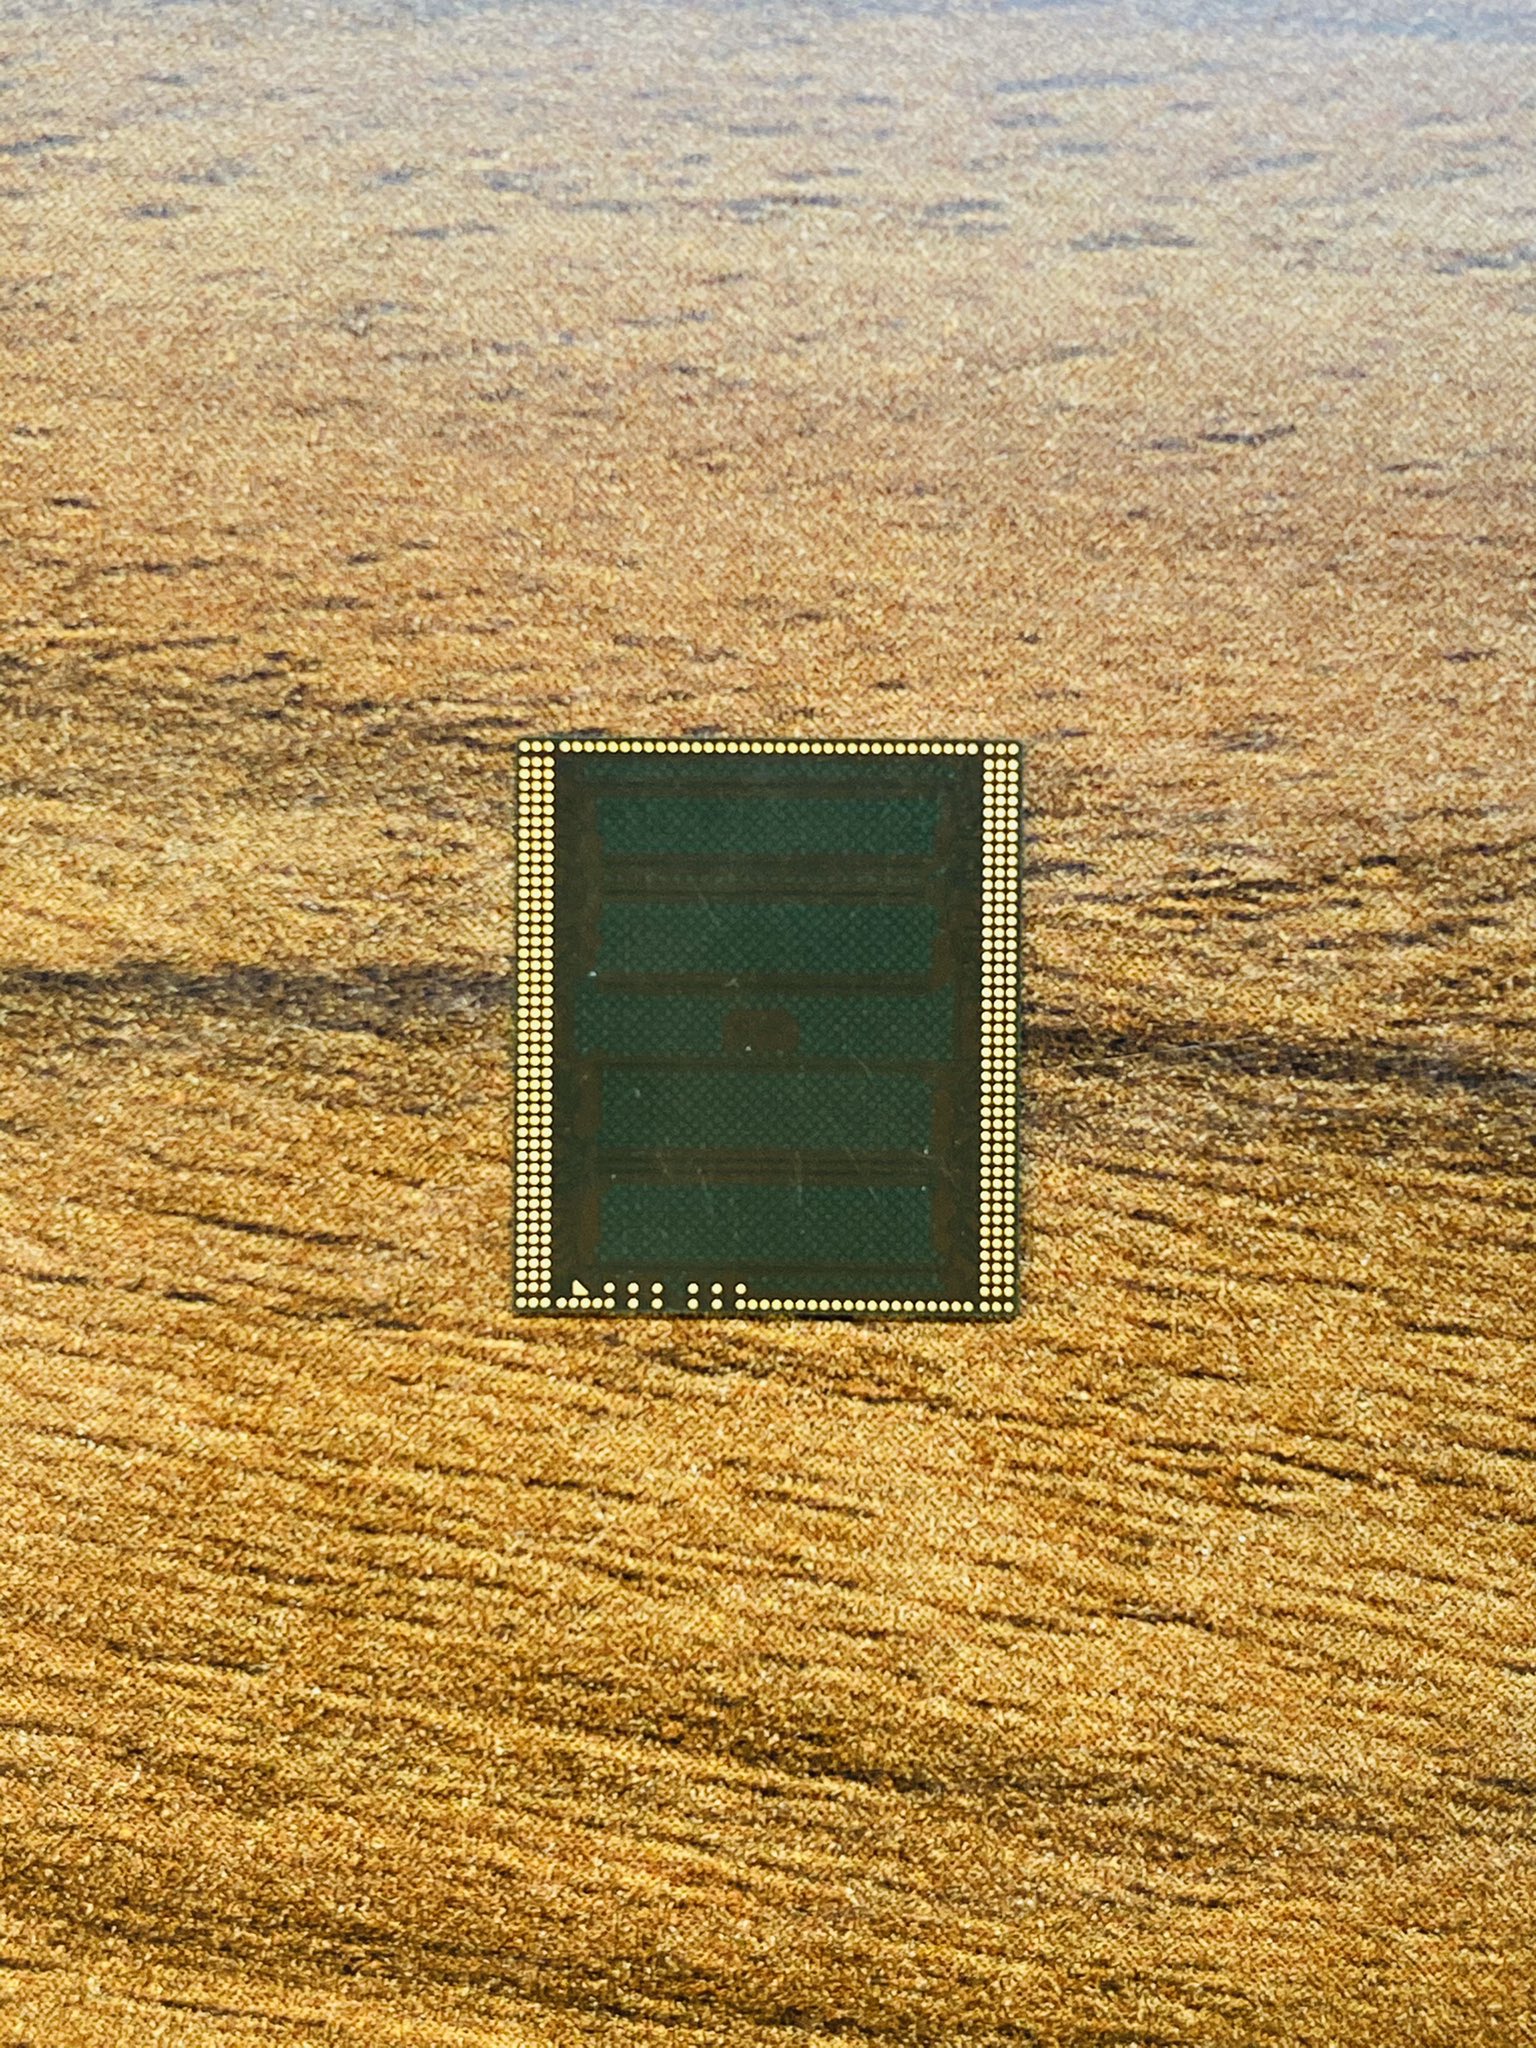 Xuất hiện ảnh thành phần RAM của chip A14 sắp tới sẽ có mặt trên iPhone 12